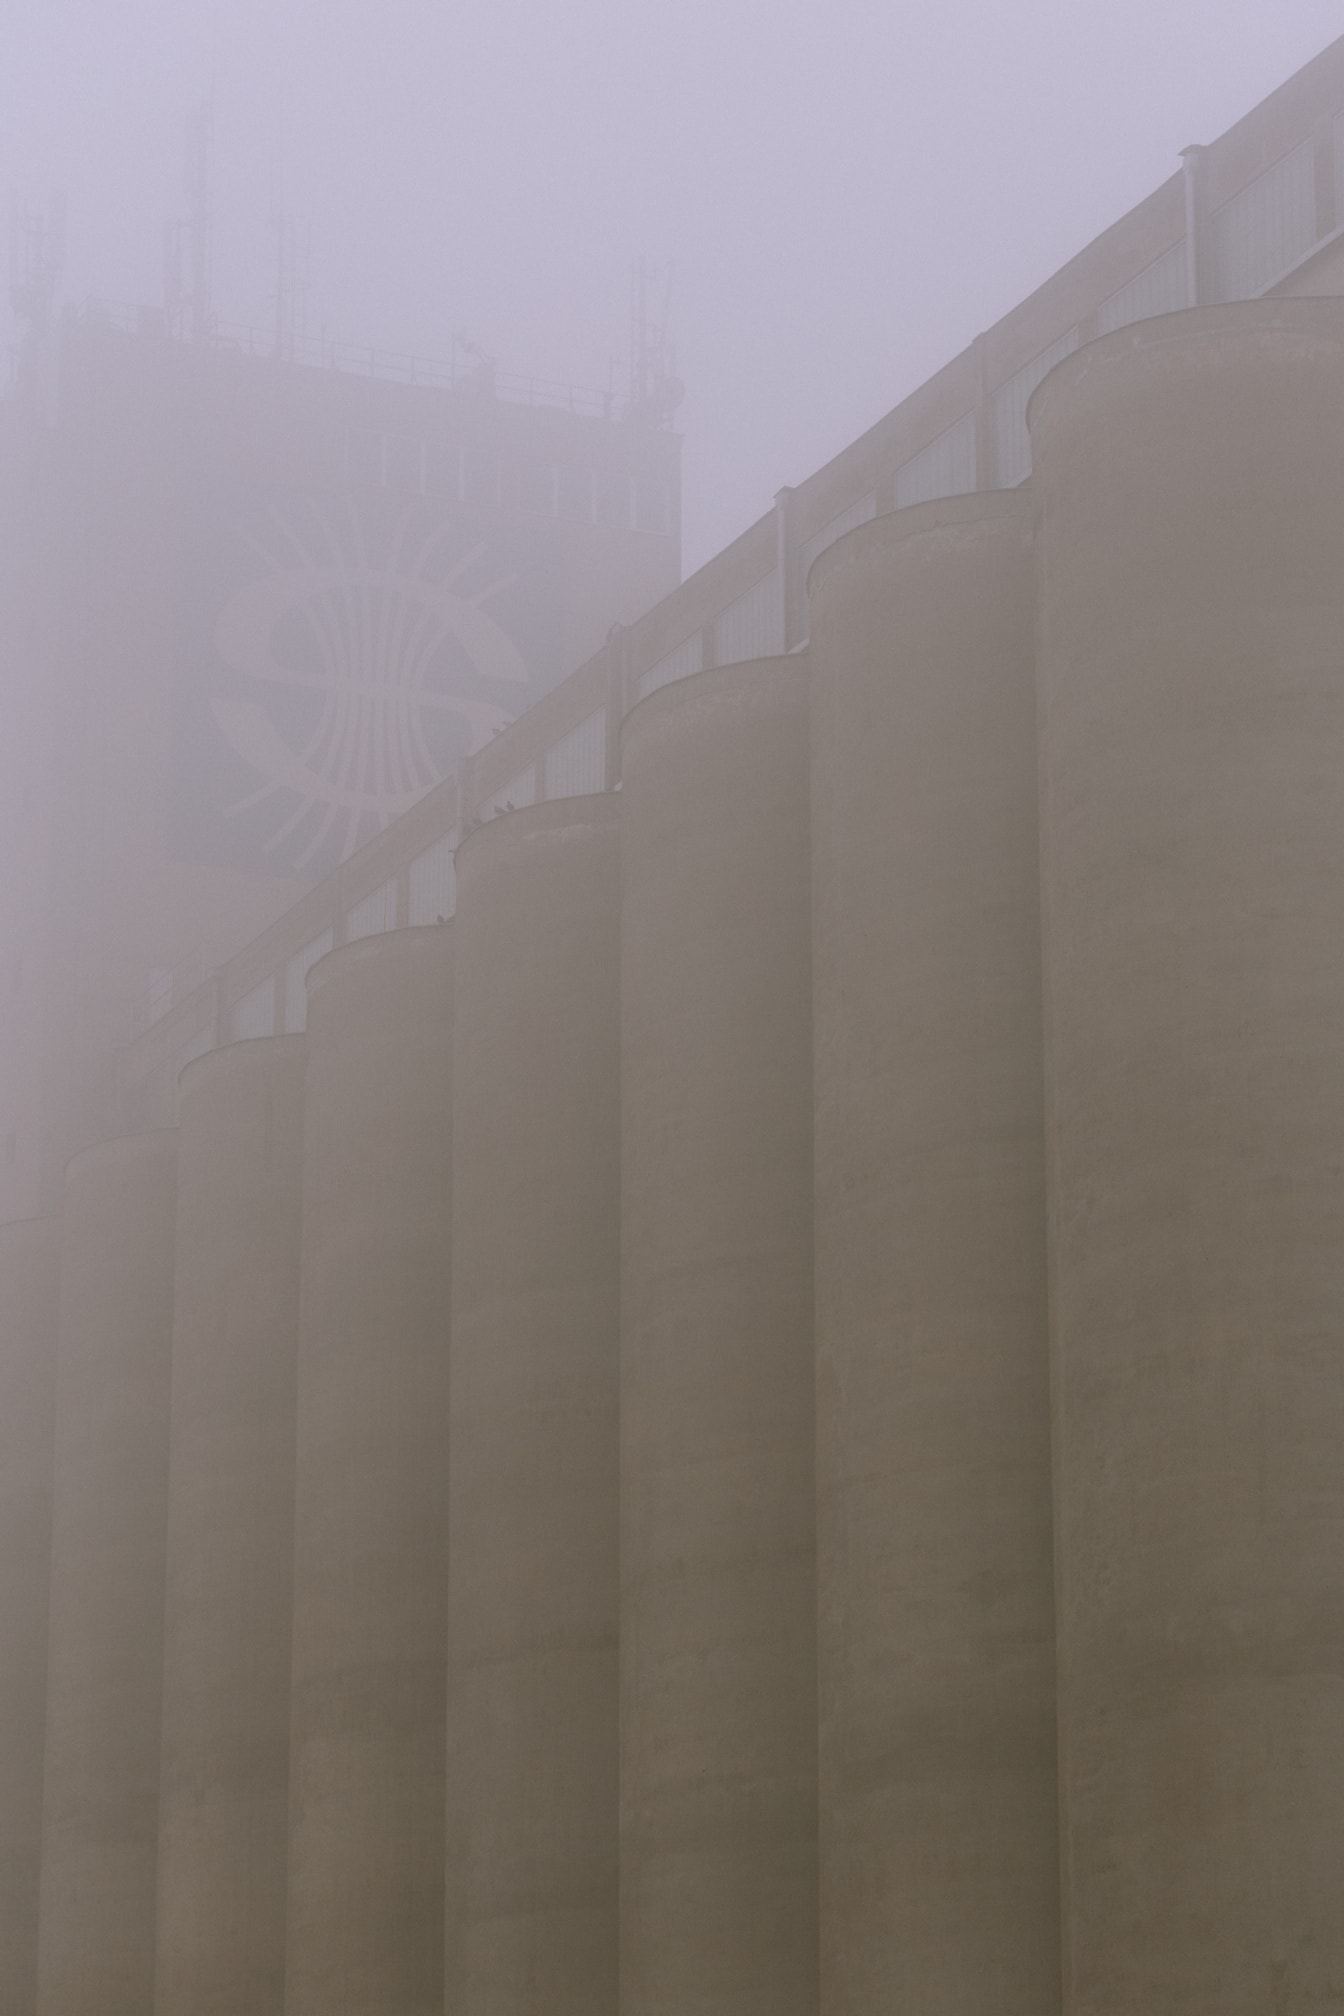 Clădire înaltă de siloz din beton în stil arhitectural socialist în ceață densă